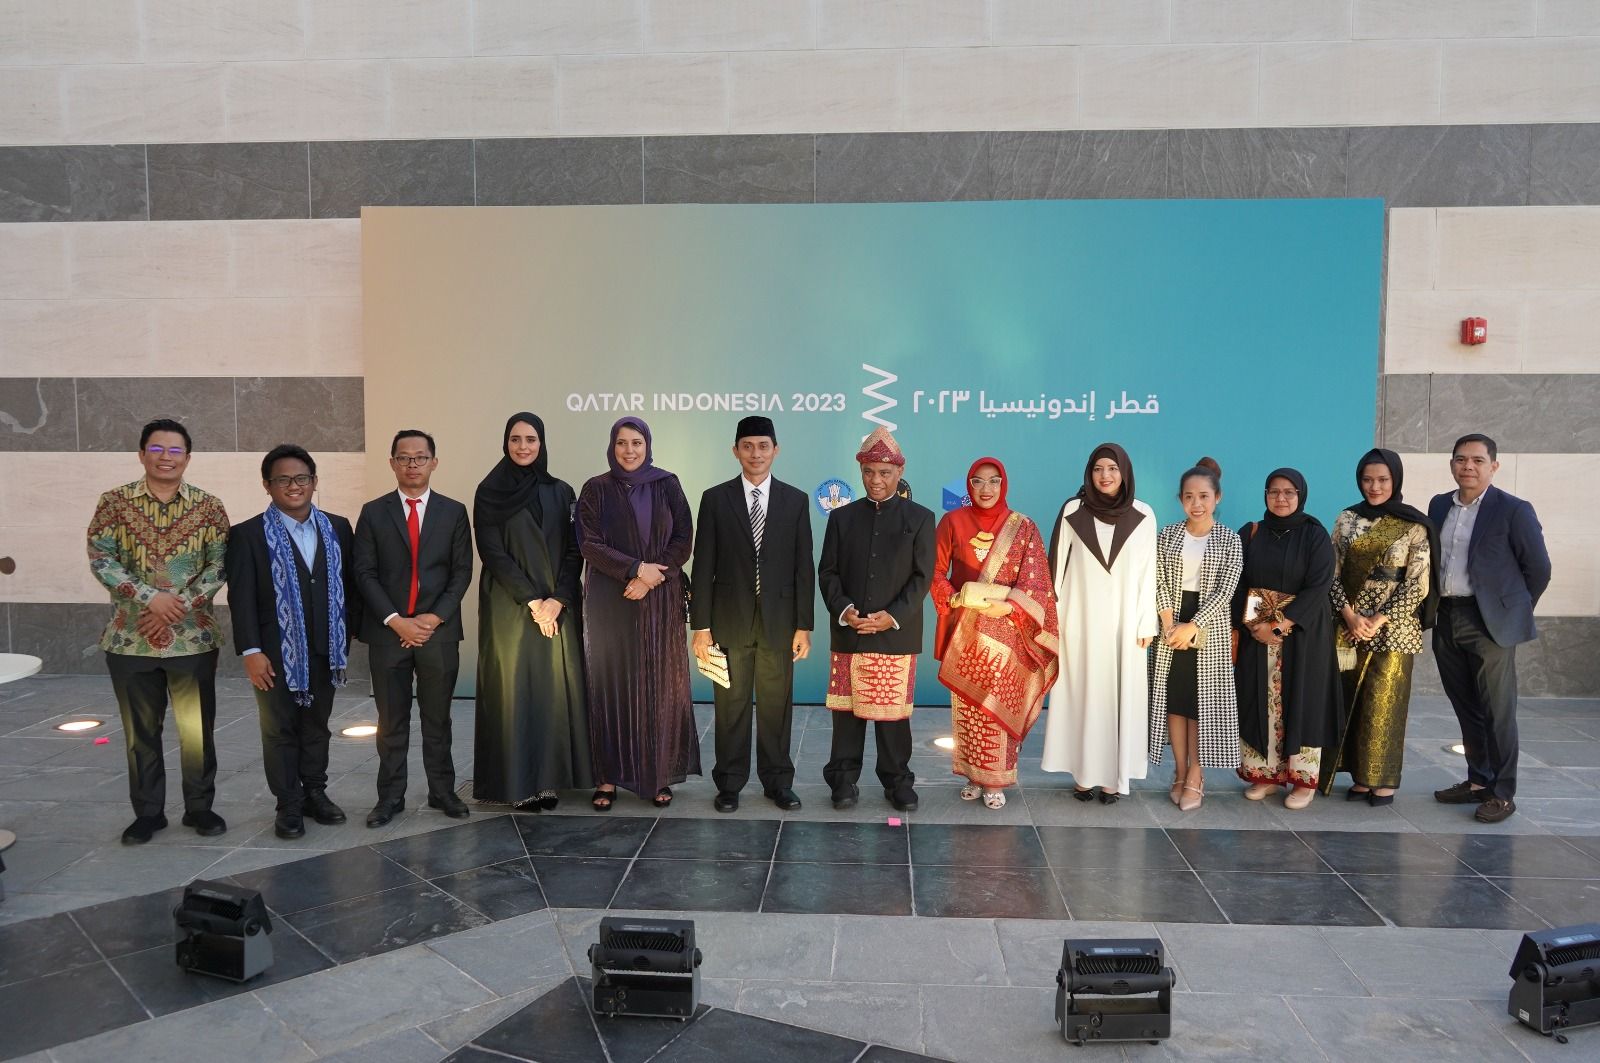 Tahun ini Pemerintah Qatar melalui Museum Qatar bersama dengan Pemerintah Republik Indonesia melalui Kementerian Pendidikan, Kebudayaan, Riset dan Teknologi (Kemendikbudristek) dan Kedutaan Besar Republik Indonesia di Doha, menyelenggarakan program Qatar-Indonesia 2023 Year of Culture.